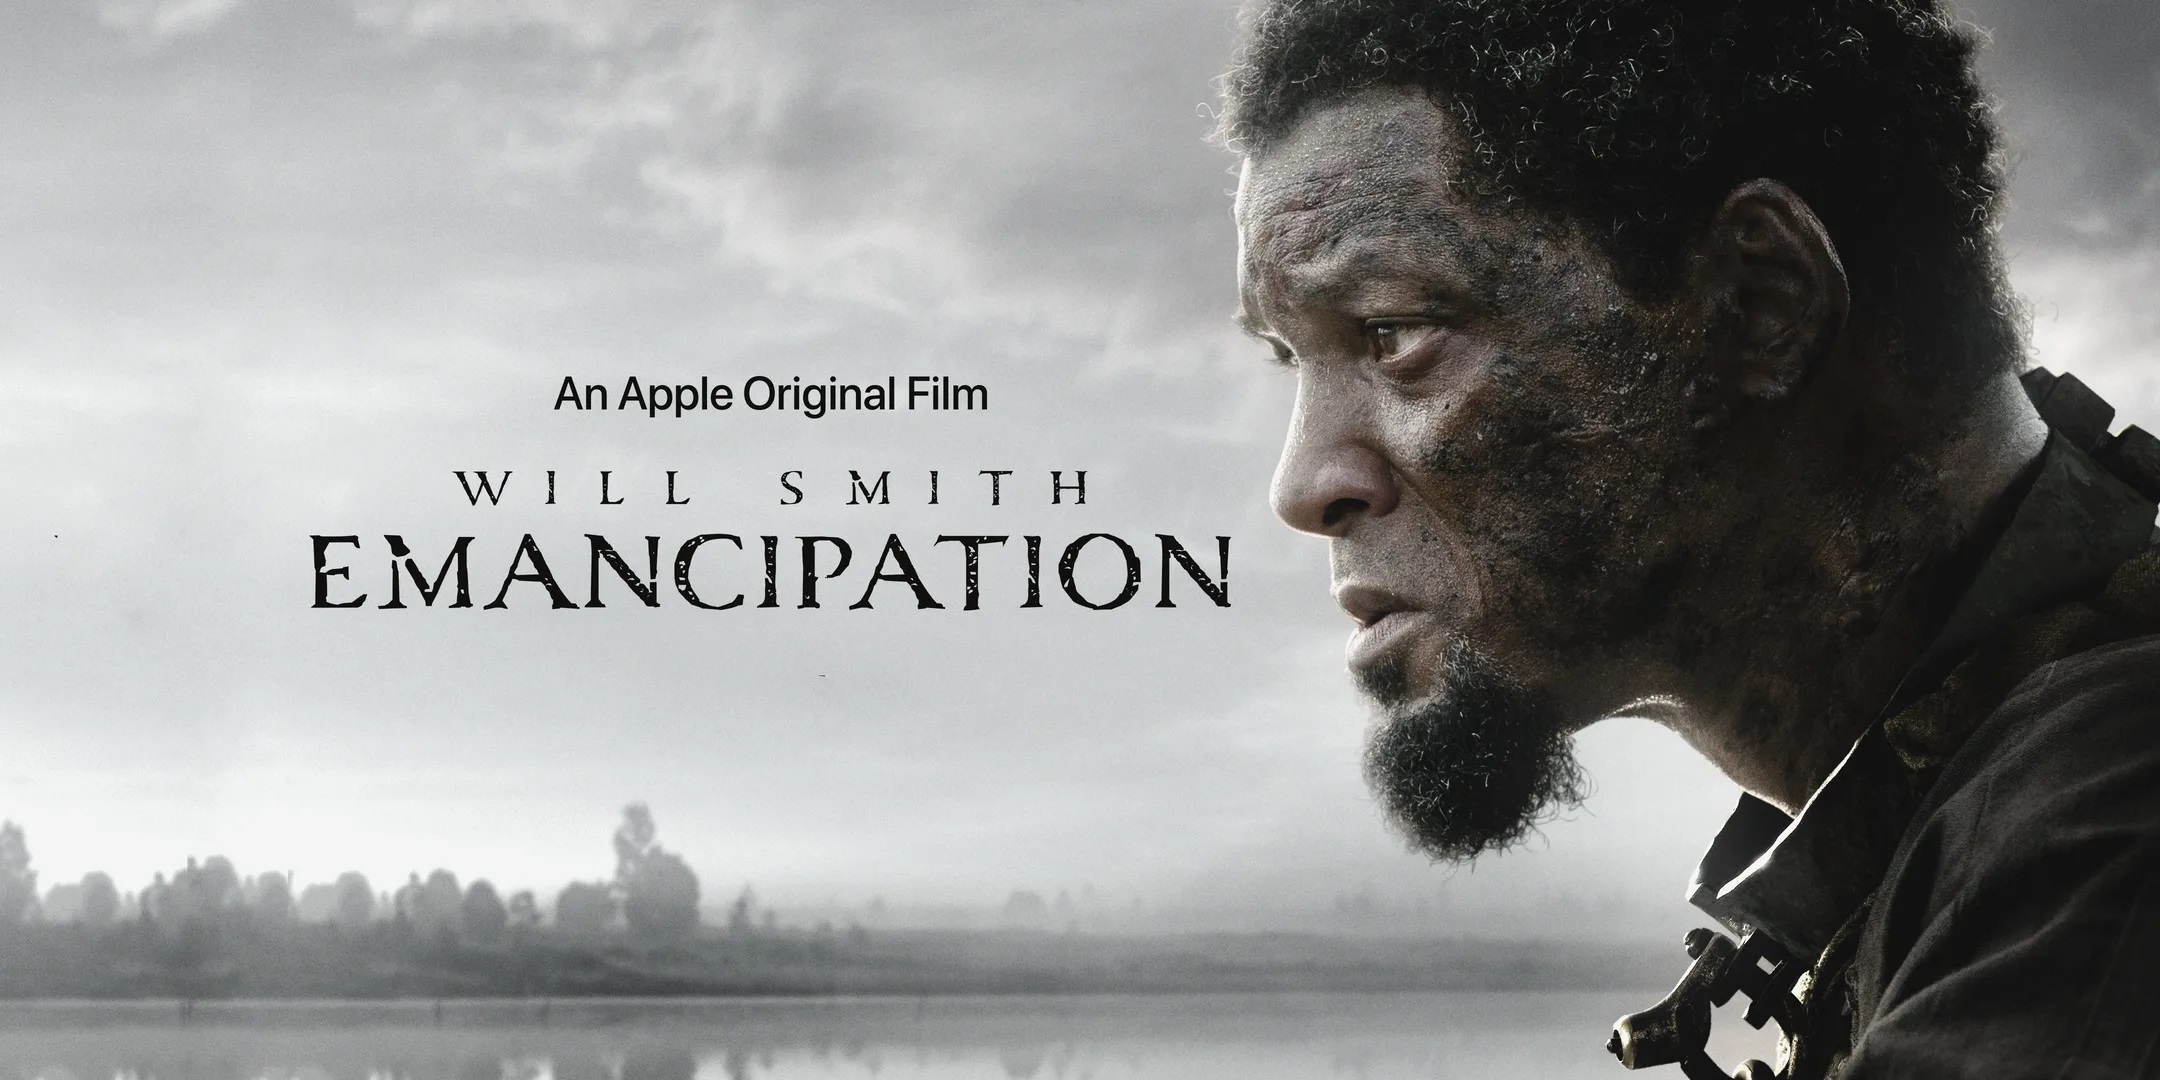 Will Smith offre un abonnement gratuit de deux mois à Apple TV+ à l'occasion de la sortie de "Liberation".